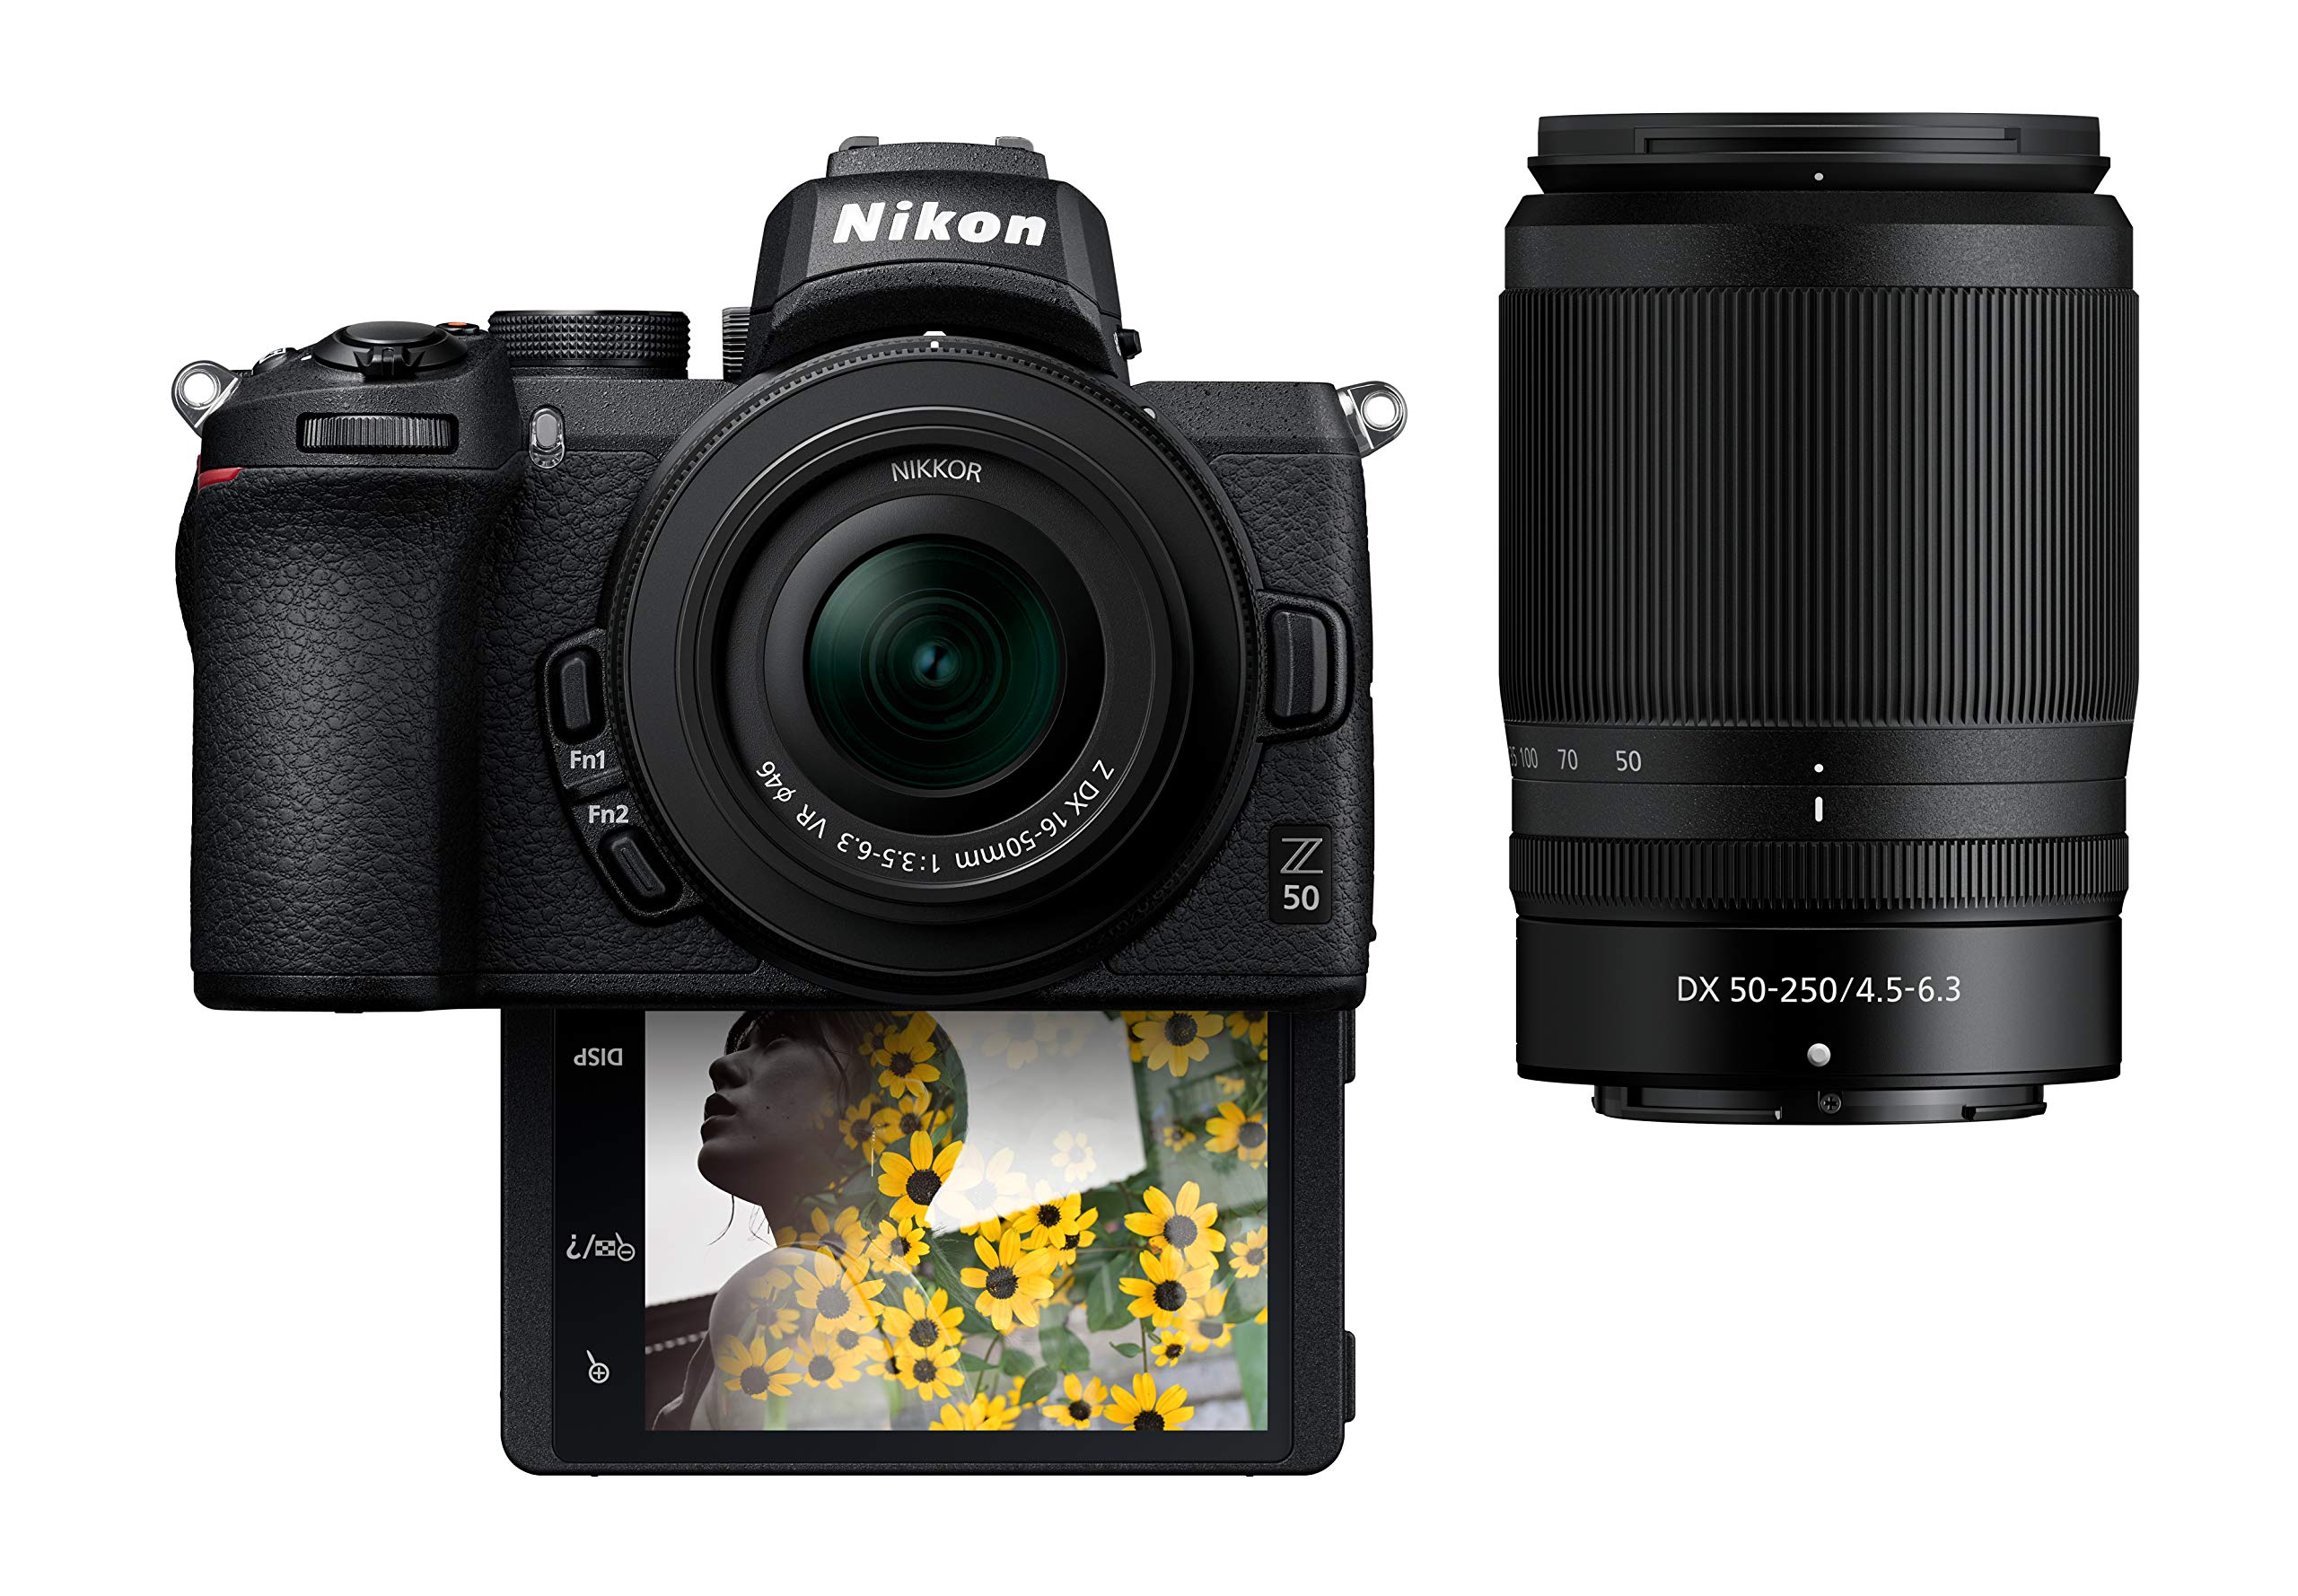  Nikon Kompaktowy bezlusterkowy aparat cyfrowy Z50 z klapką pod wyświetlaczem LCD do selfie/vloggera | Zestaw obiektywów zmiennoogniskowych 2 zawiera: NIKKOR Z DX 16-50mm f/3.5-6.3 VR i NIKKOR Z DX...